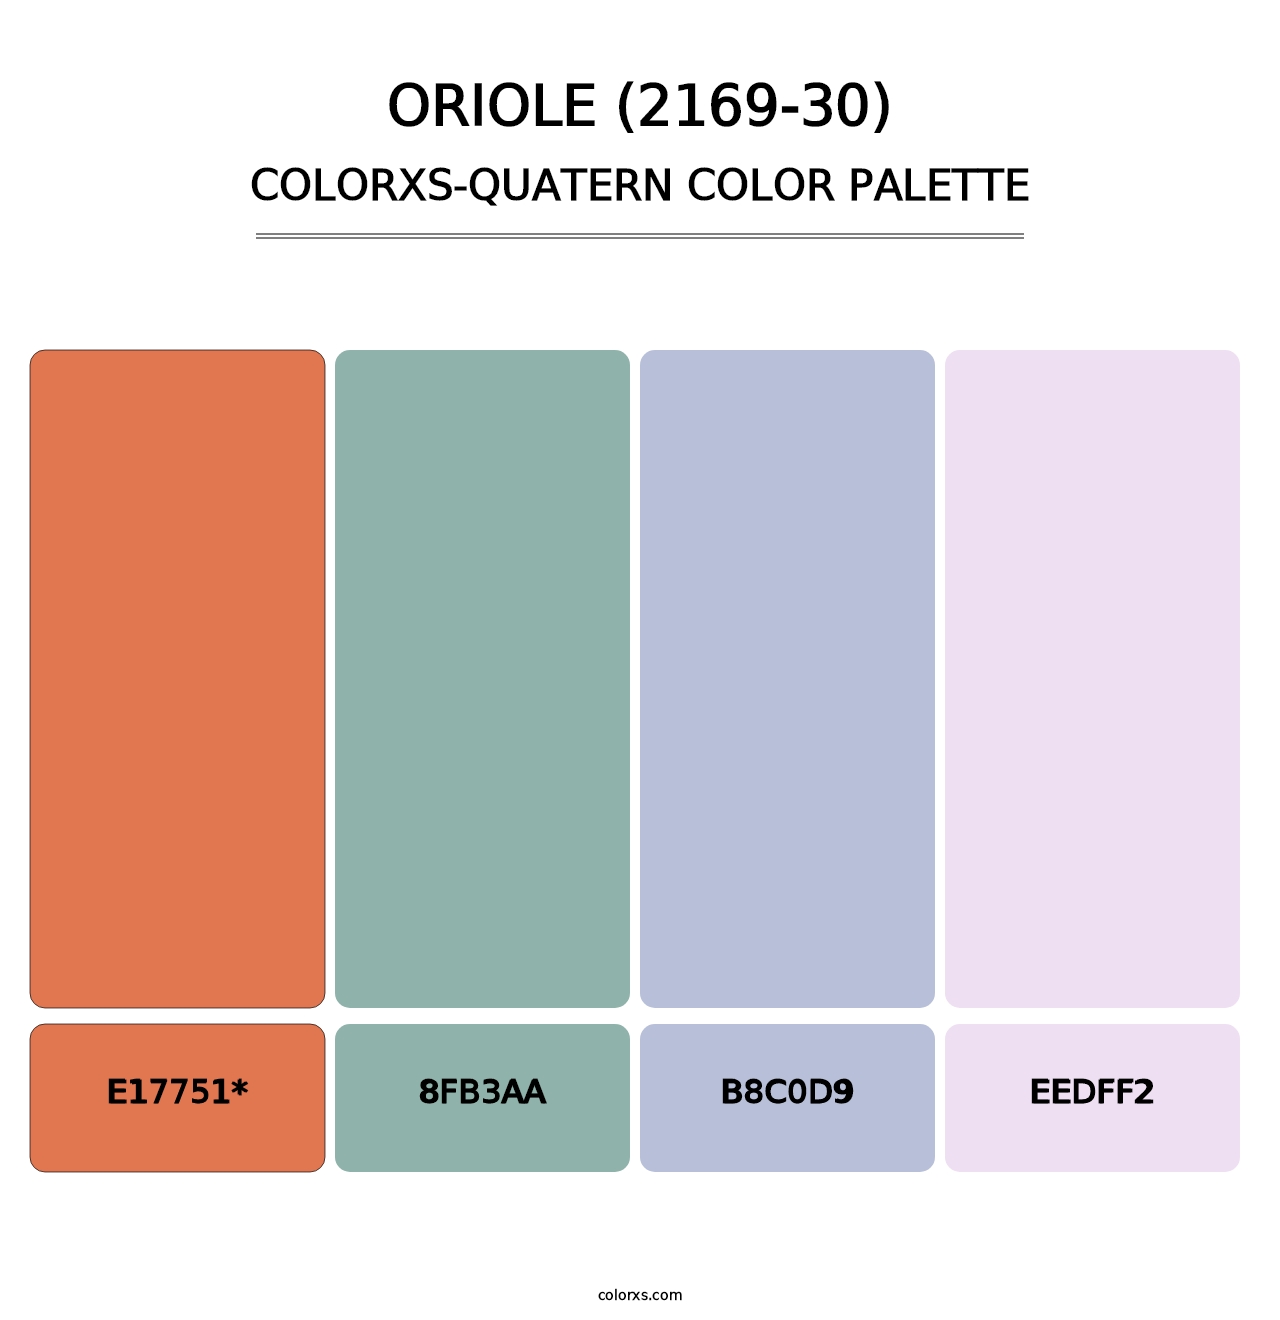 Oriole (2169-30) - Colorxs Quatern Palette